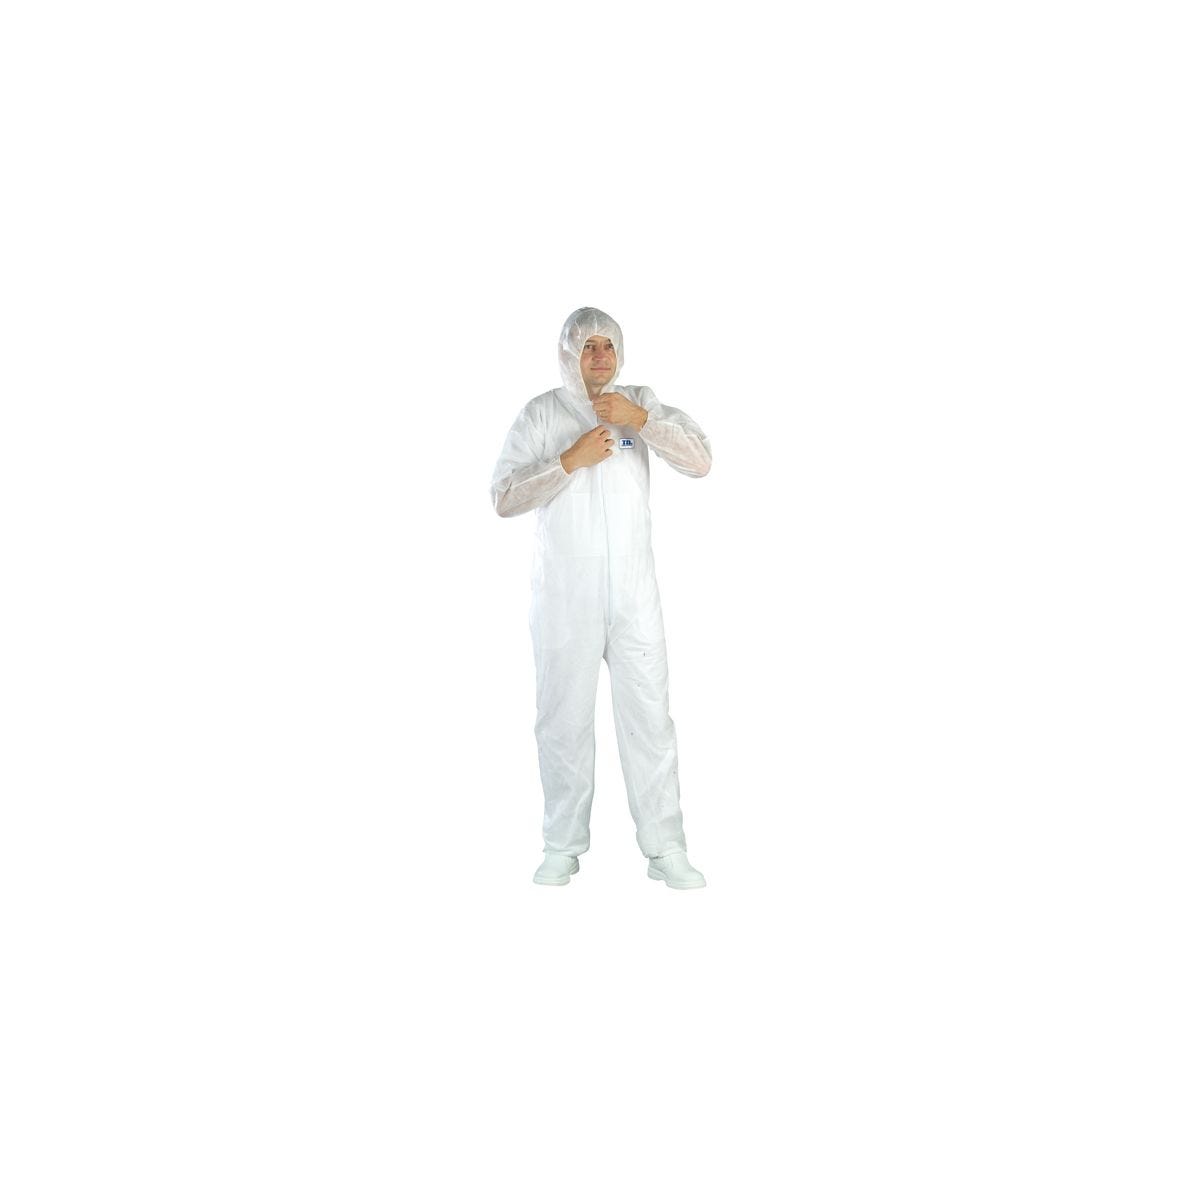 Combinaison SPP 40g/m² blanc avec capuche - COVERGUARD - Taille 3XL 0